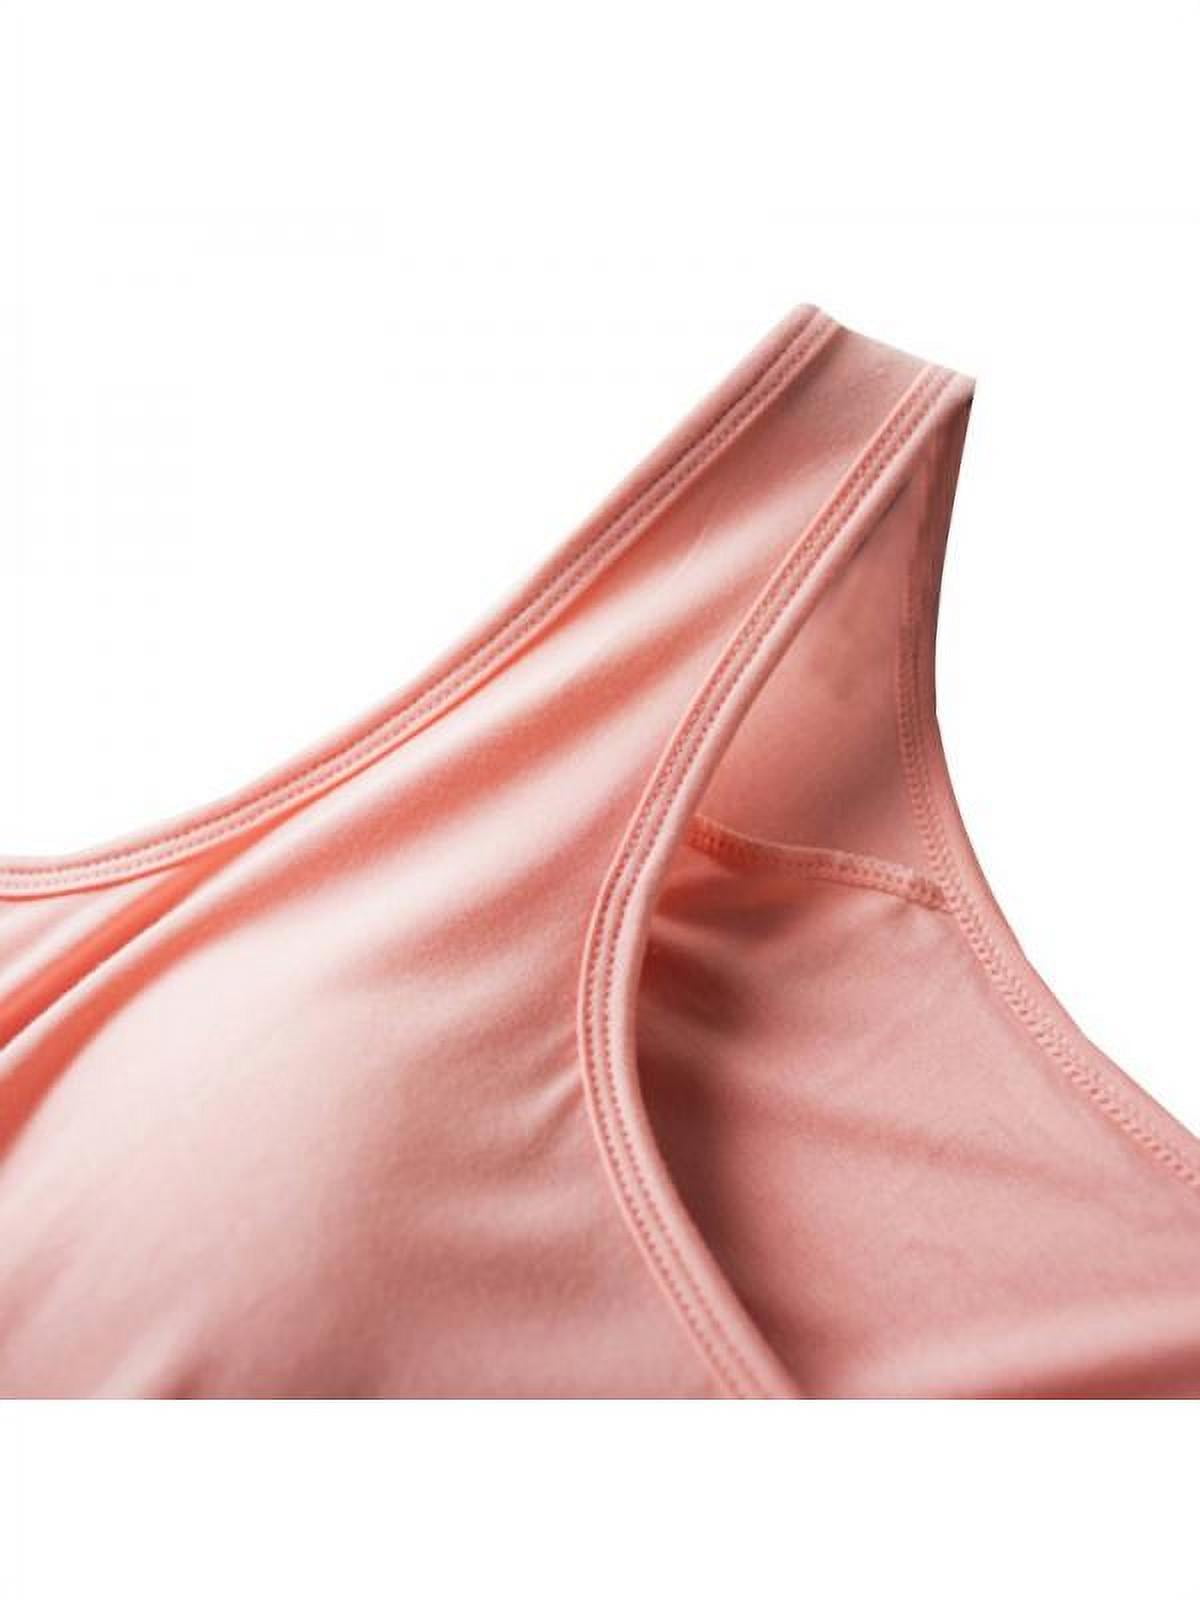 Women Built-in Bra Sleeveless Tank Top Sleepwear Padded Long